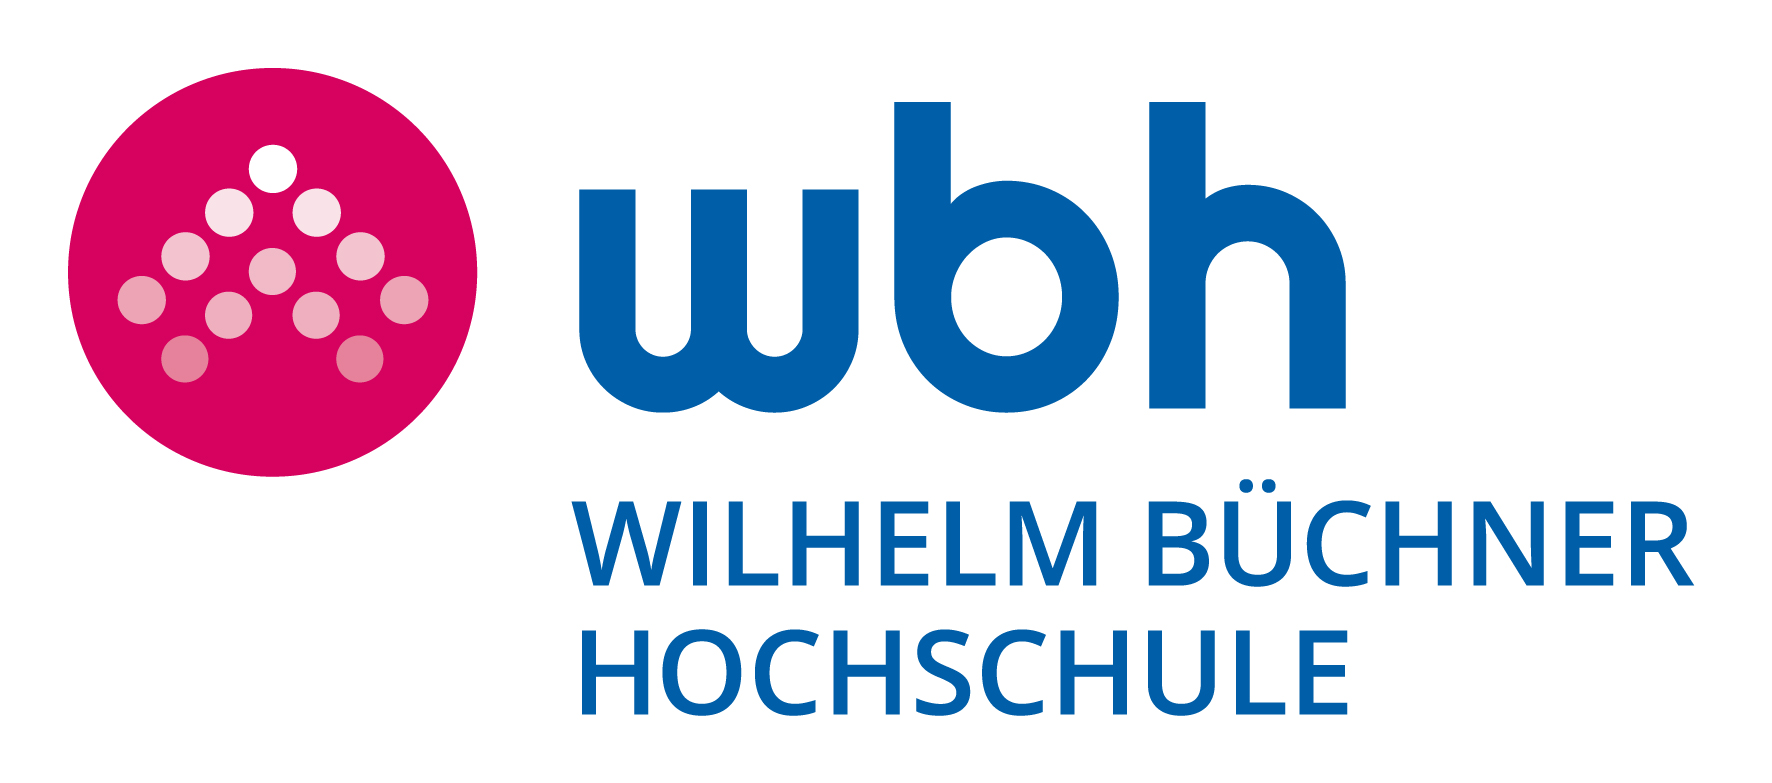 Logo: Wilhelm Büchner Hochschule